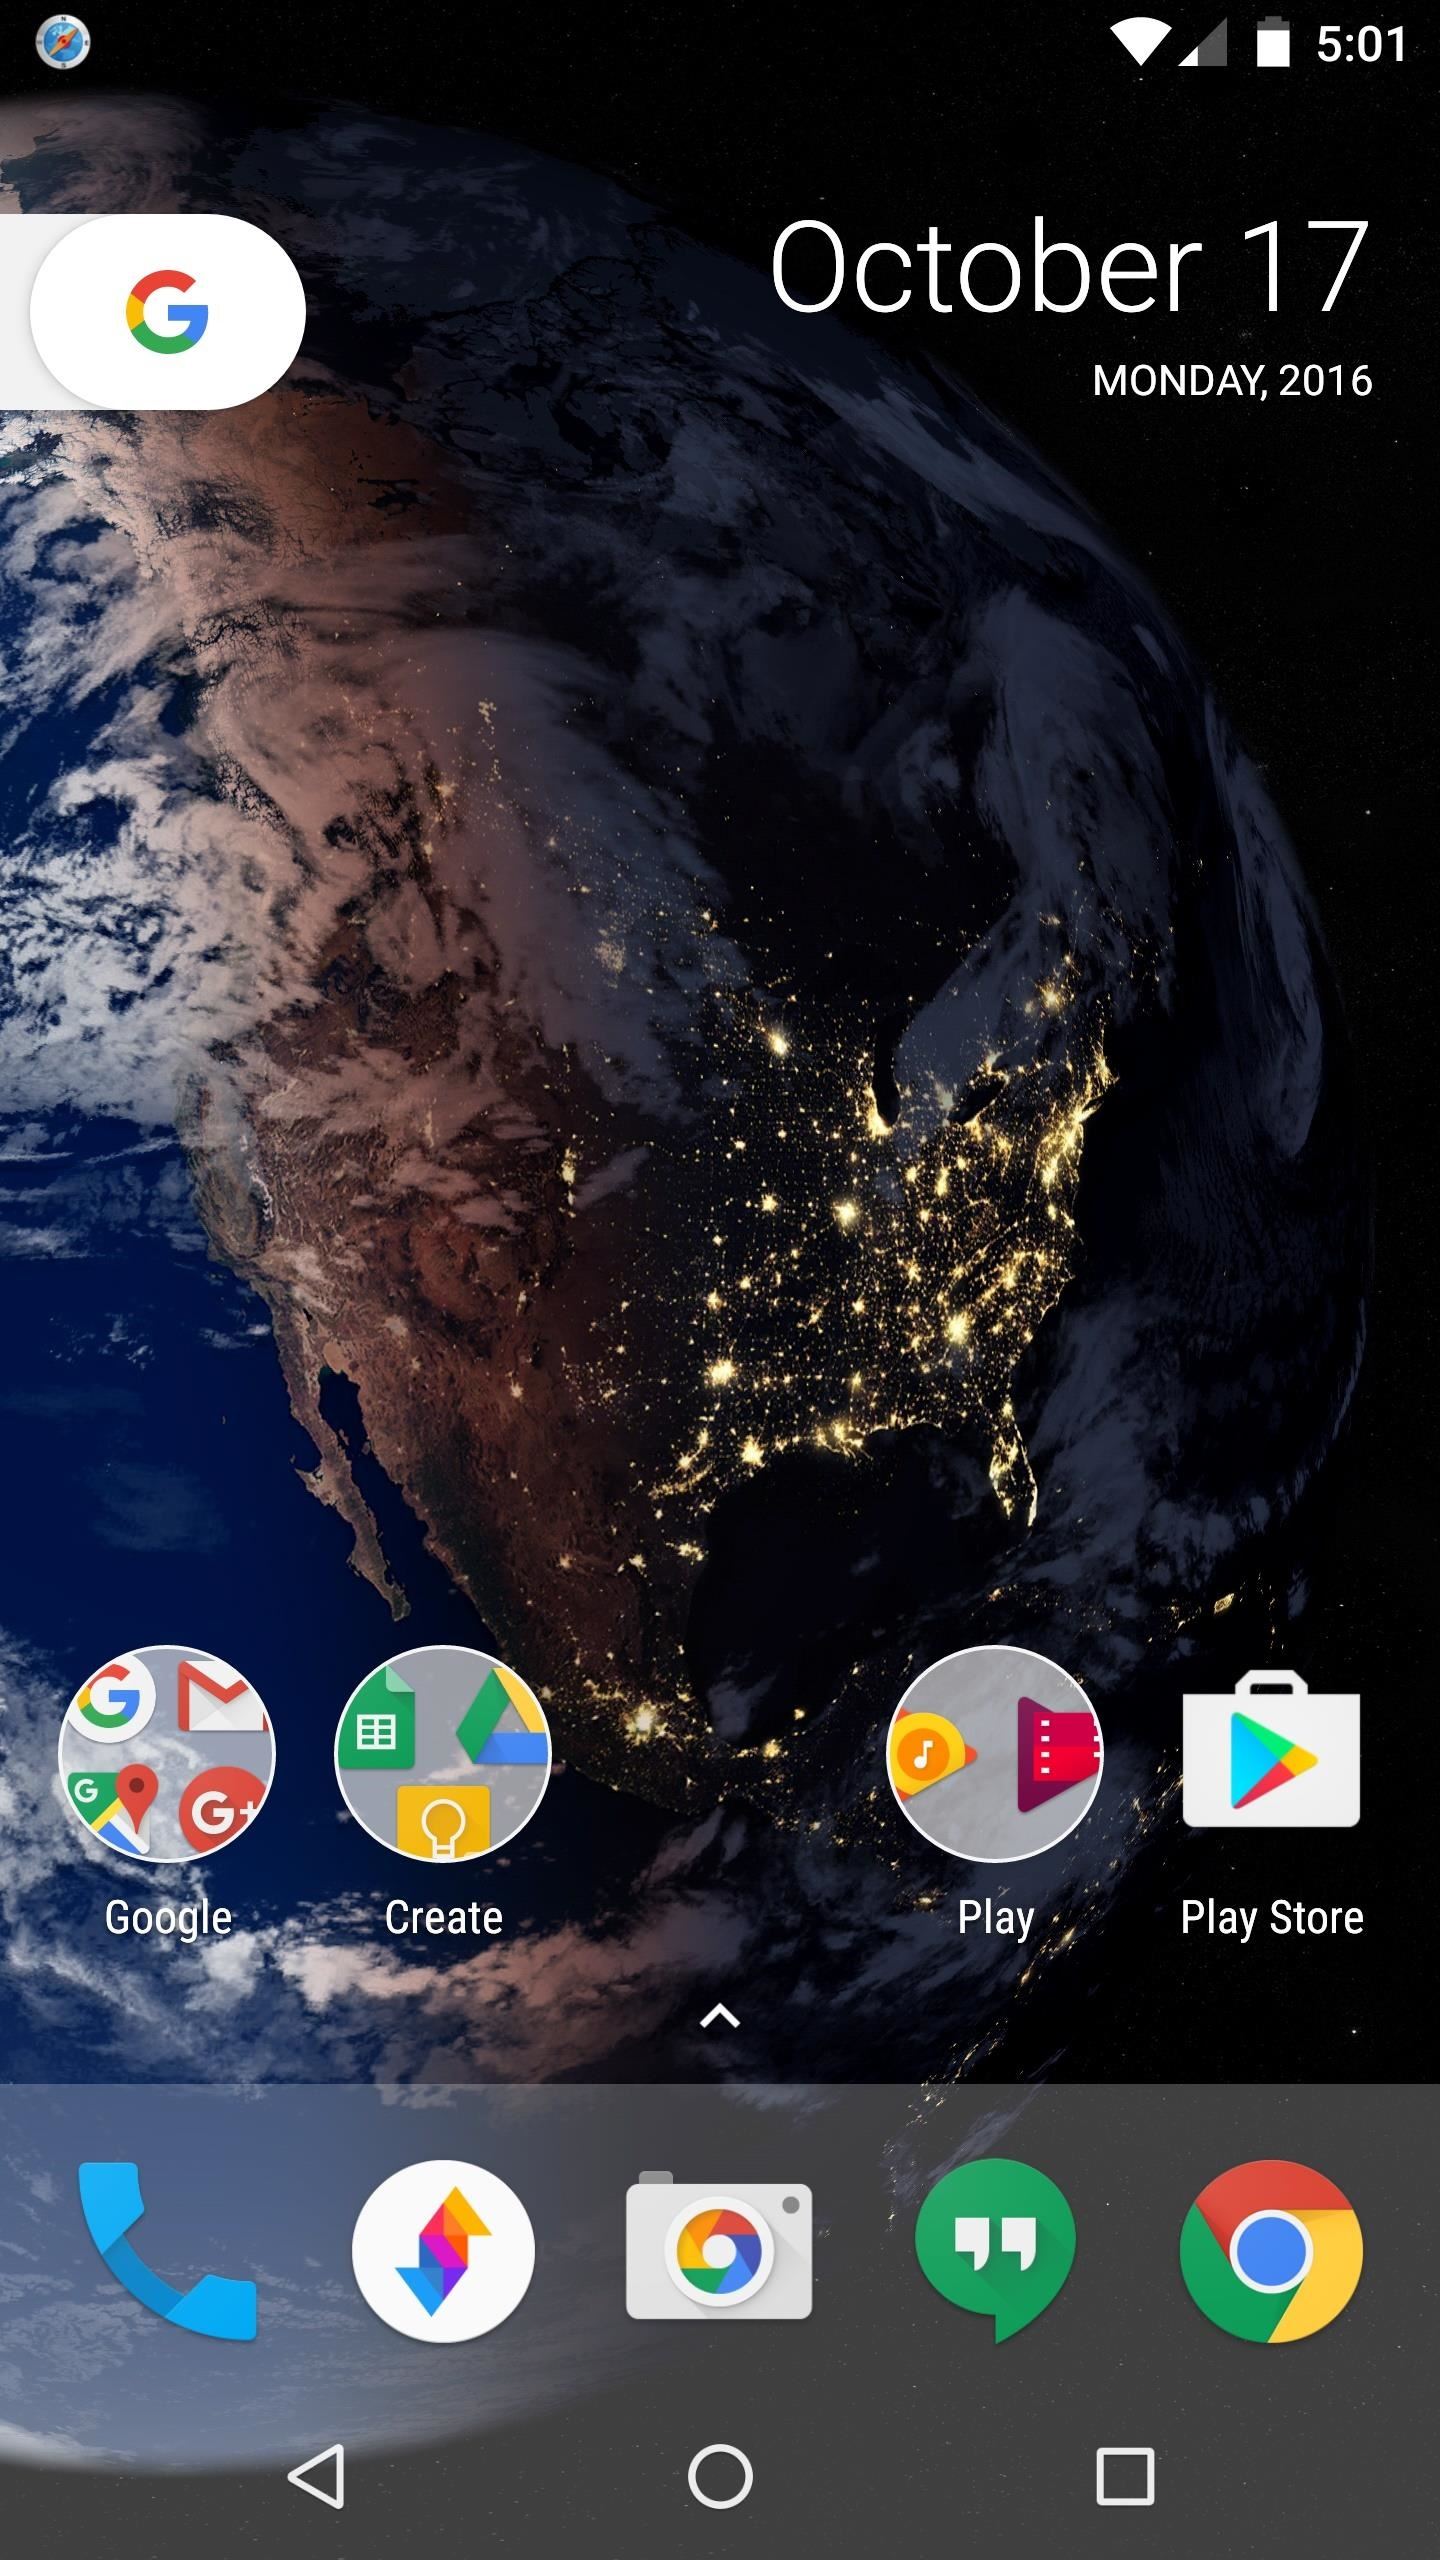 google pixel wallpaper,bildschirmfoto,himmel,technologie,smartphone,gadget